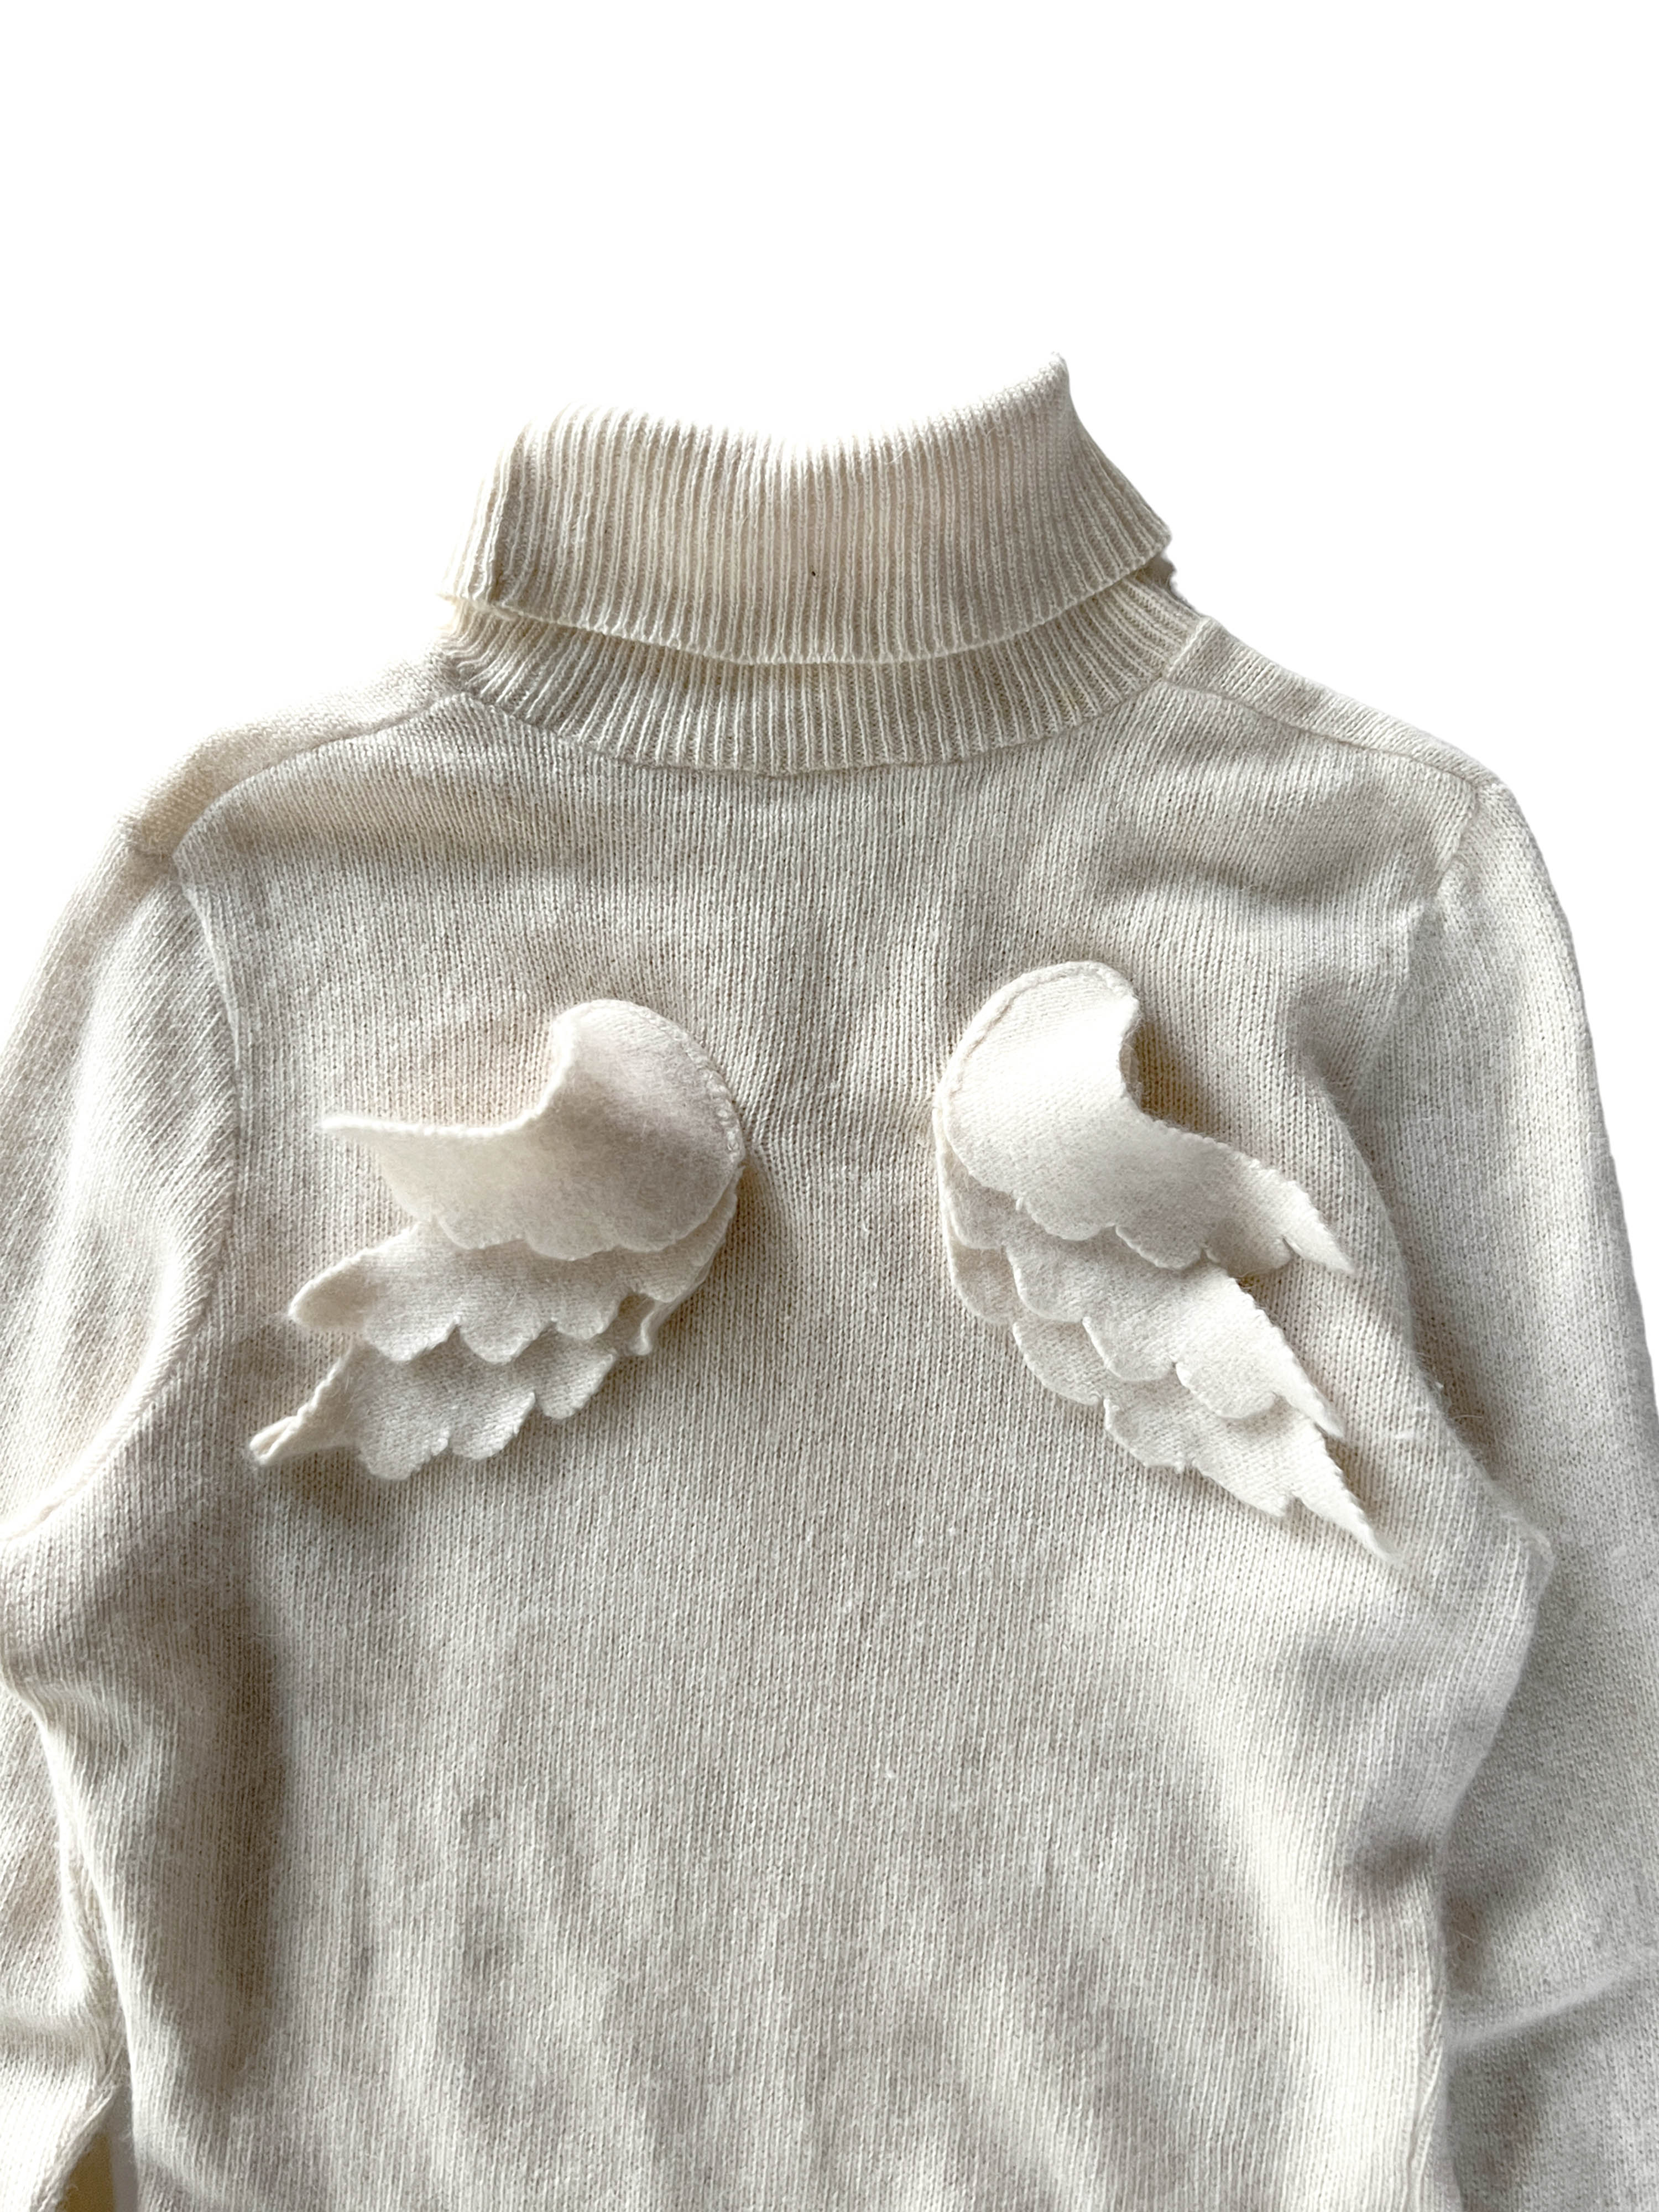 vintage angel knit